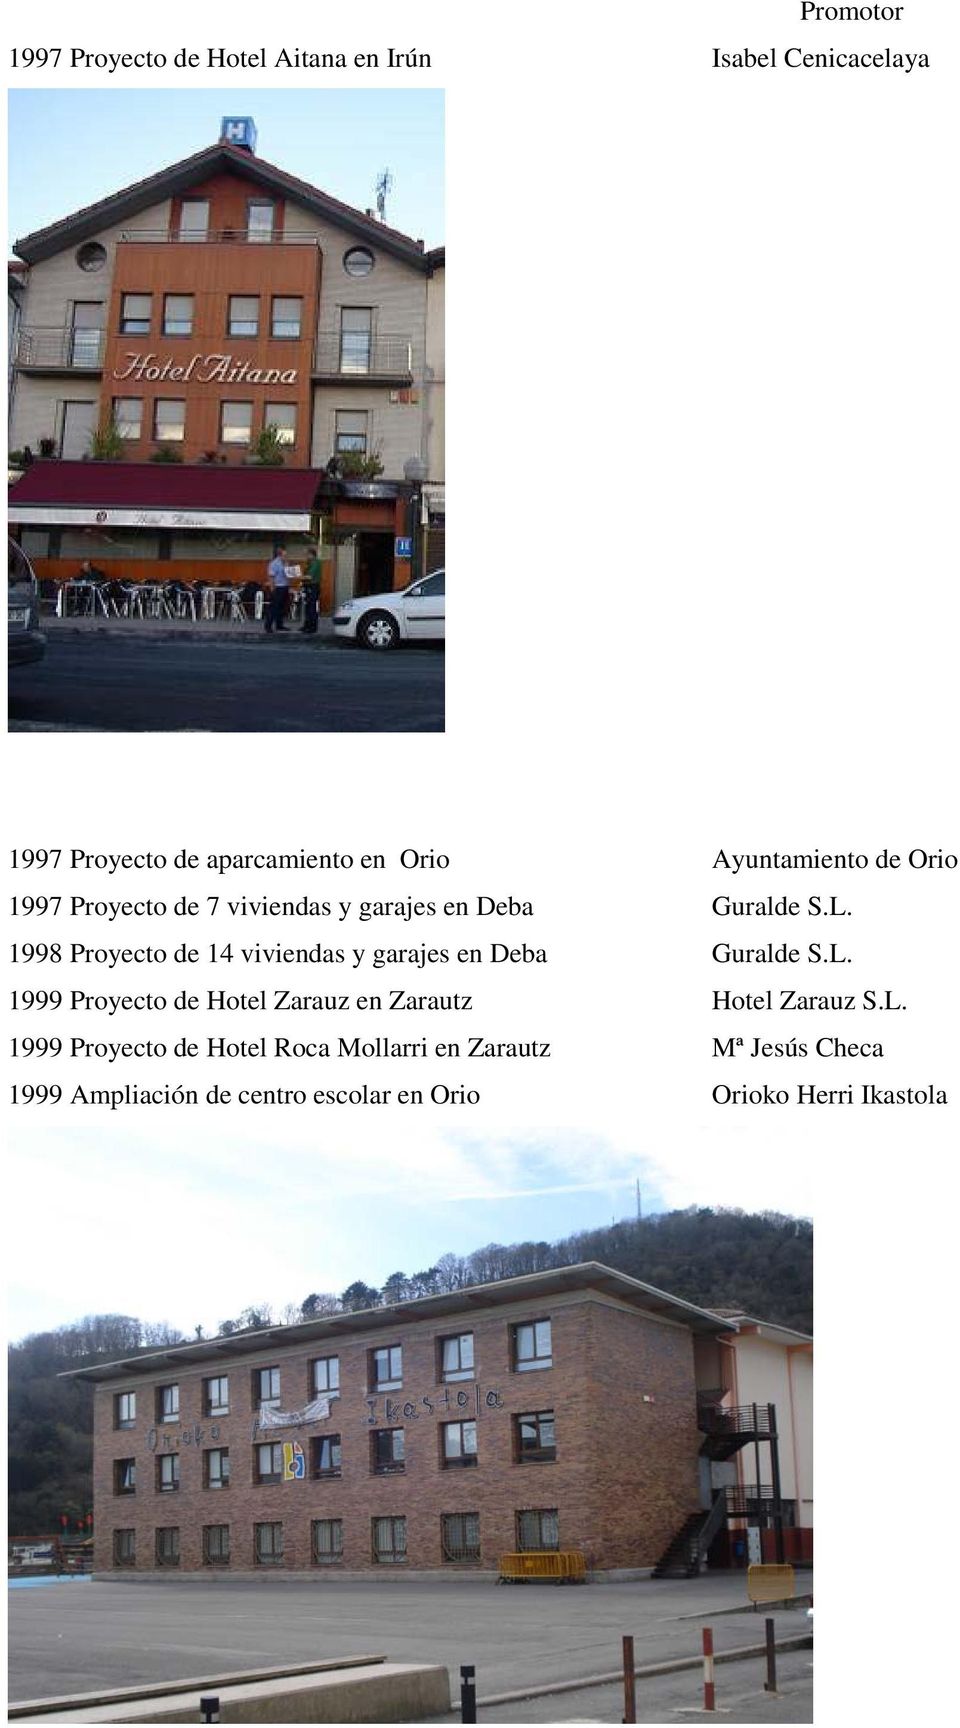 1998 Proyecto de 14 viviendas y garajes en Deba Guralde S.L.